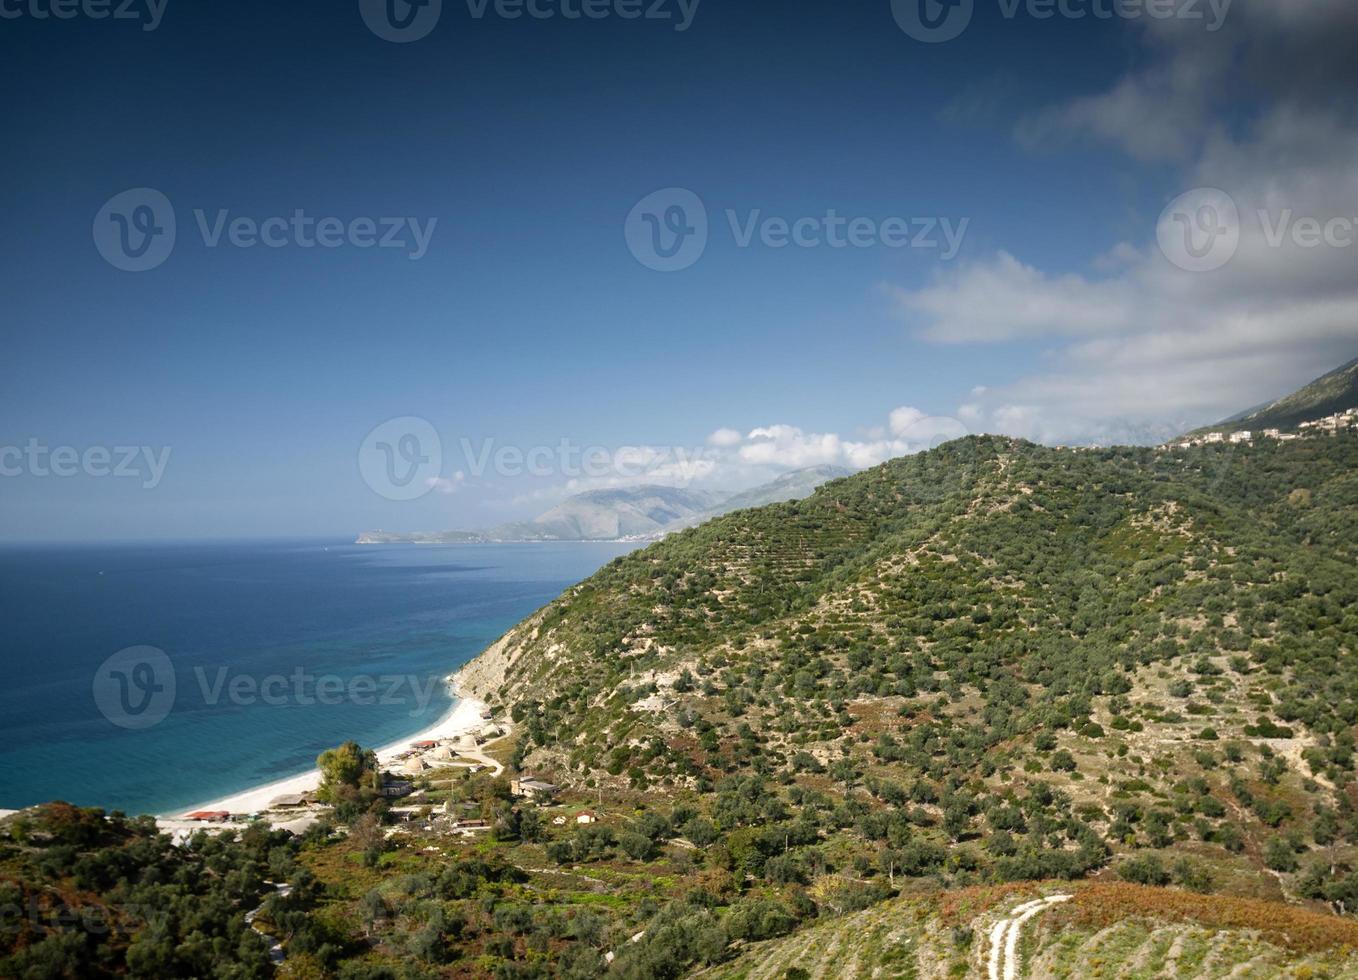 paisagem de praia da costa do mar mediterrâneo ioniano do sul da albânia ao norte de sarande na estrada para vlore foto